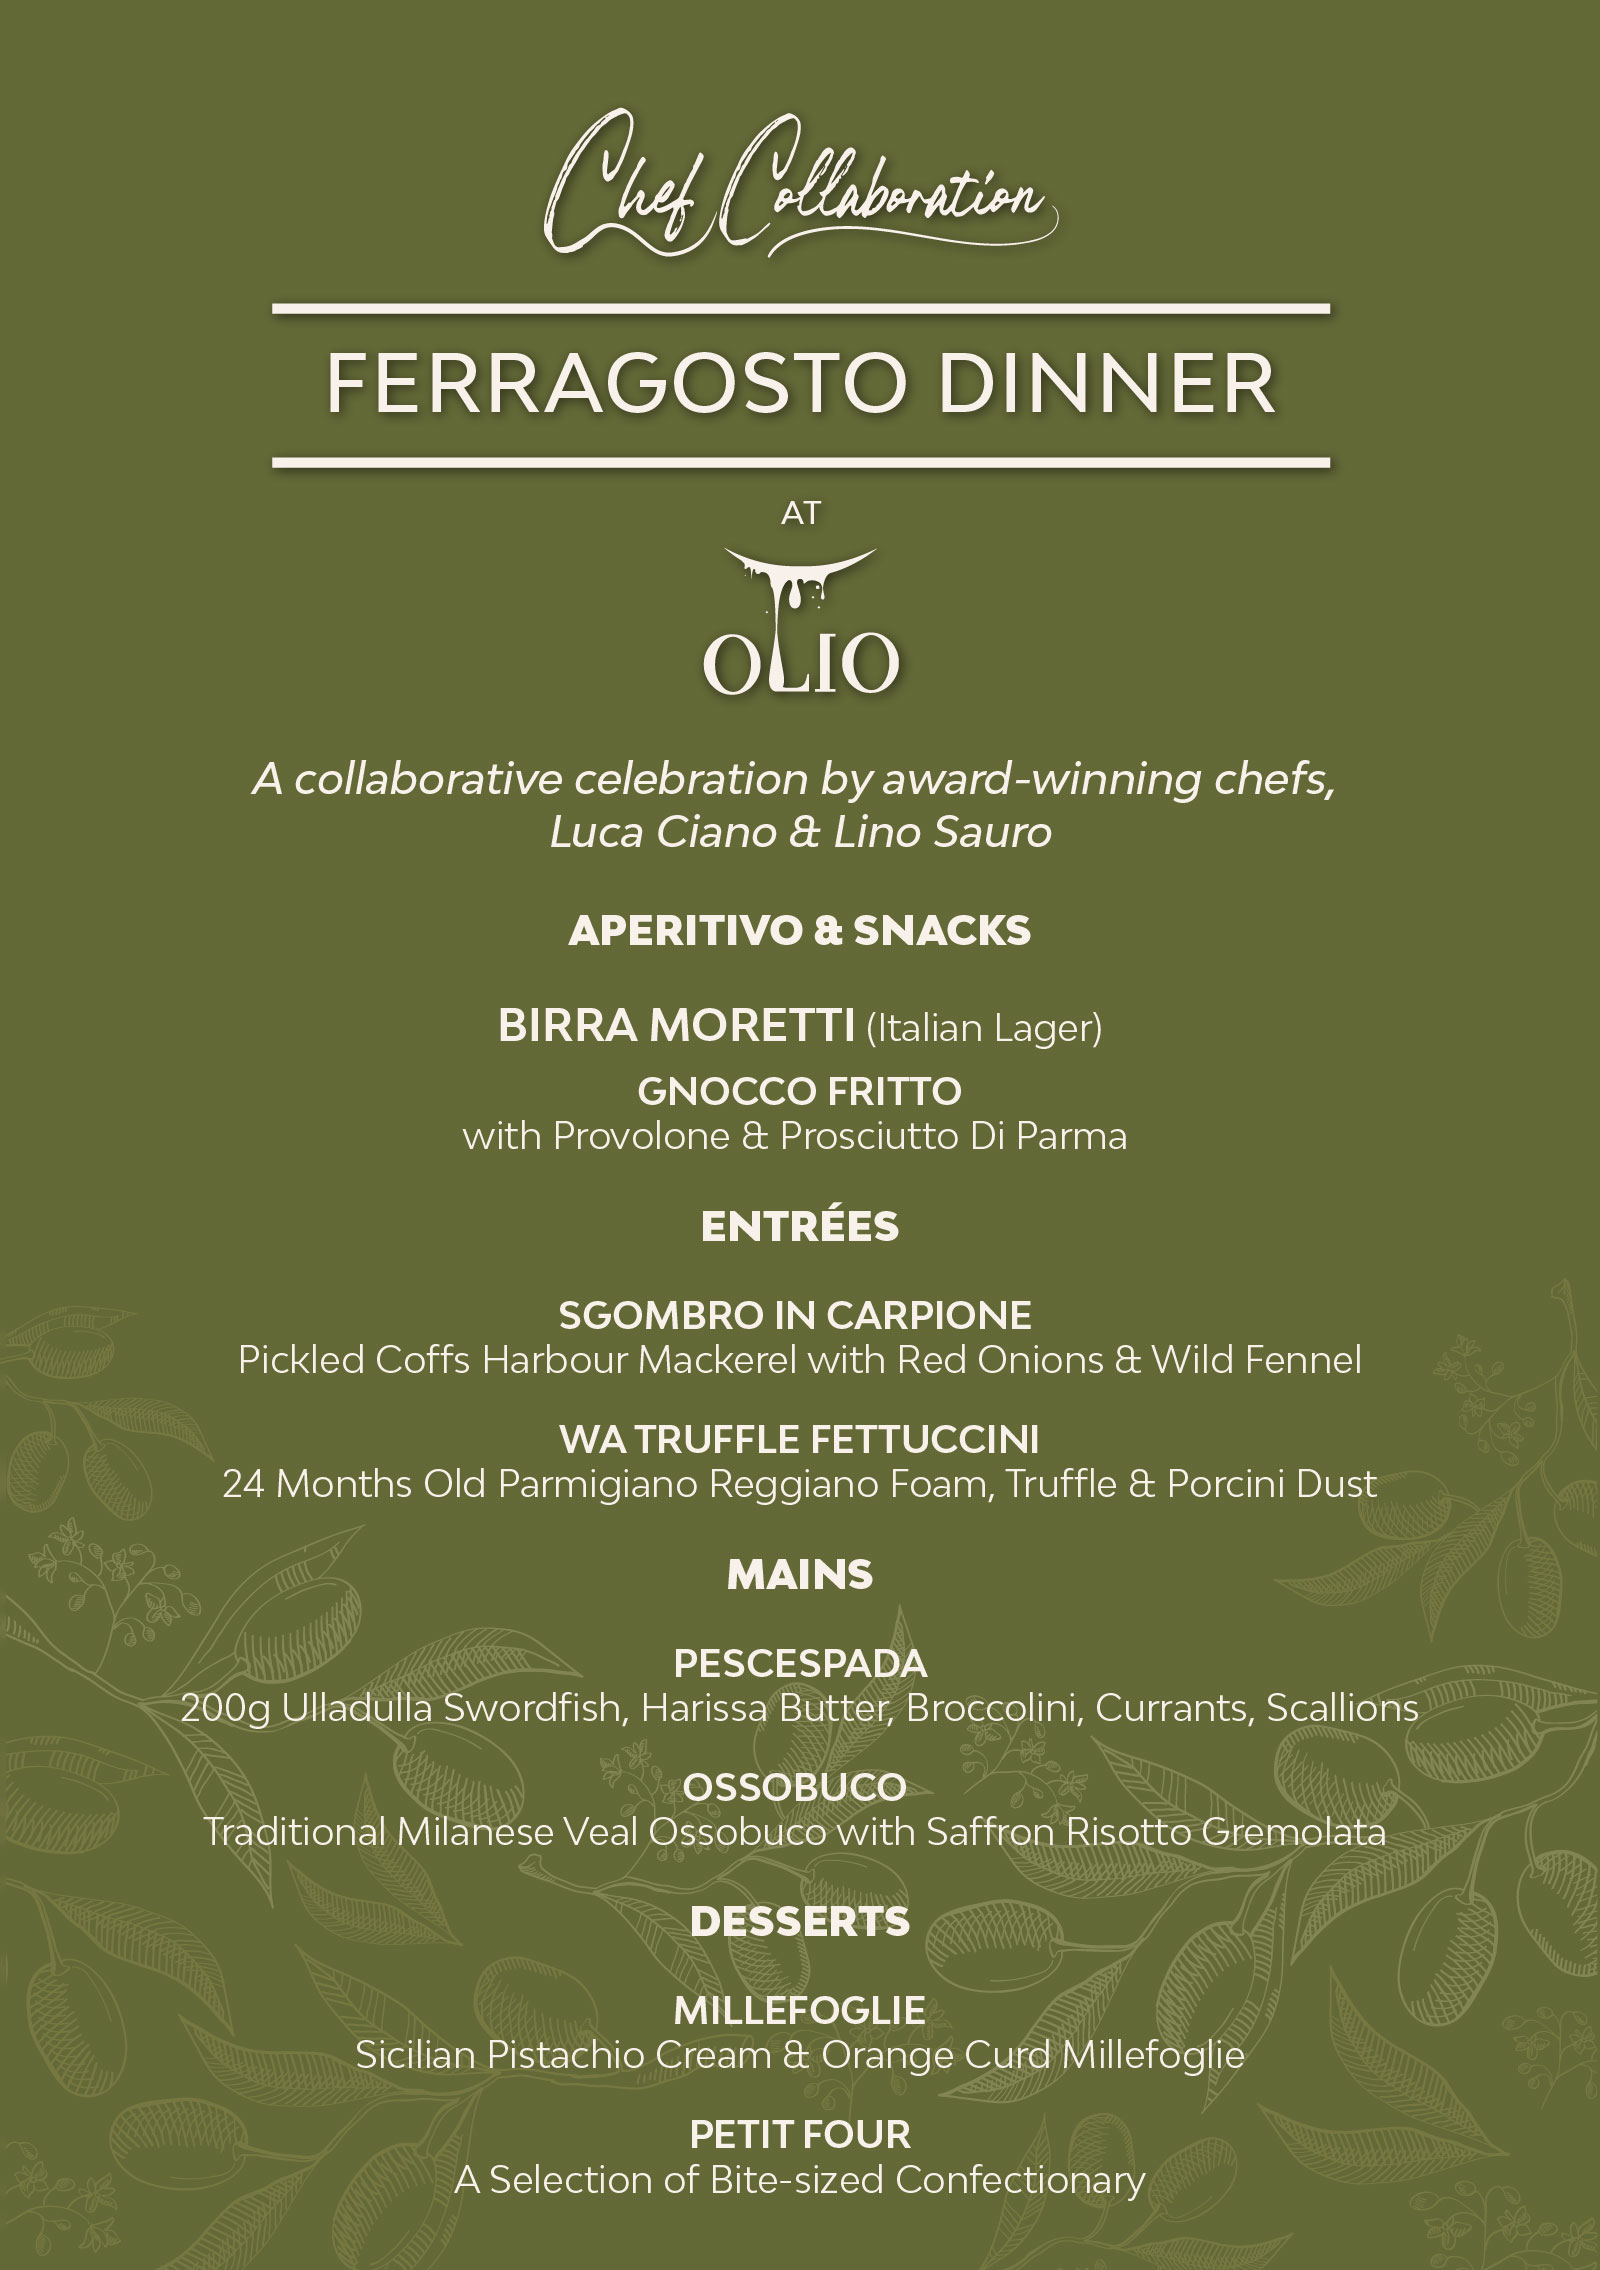 Ferragosto Dinner at Olio